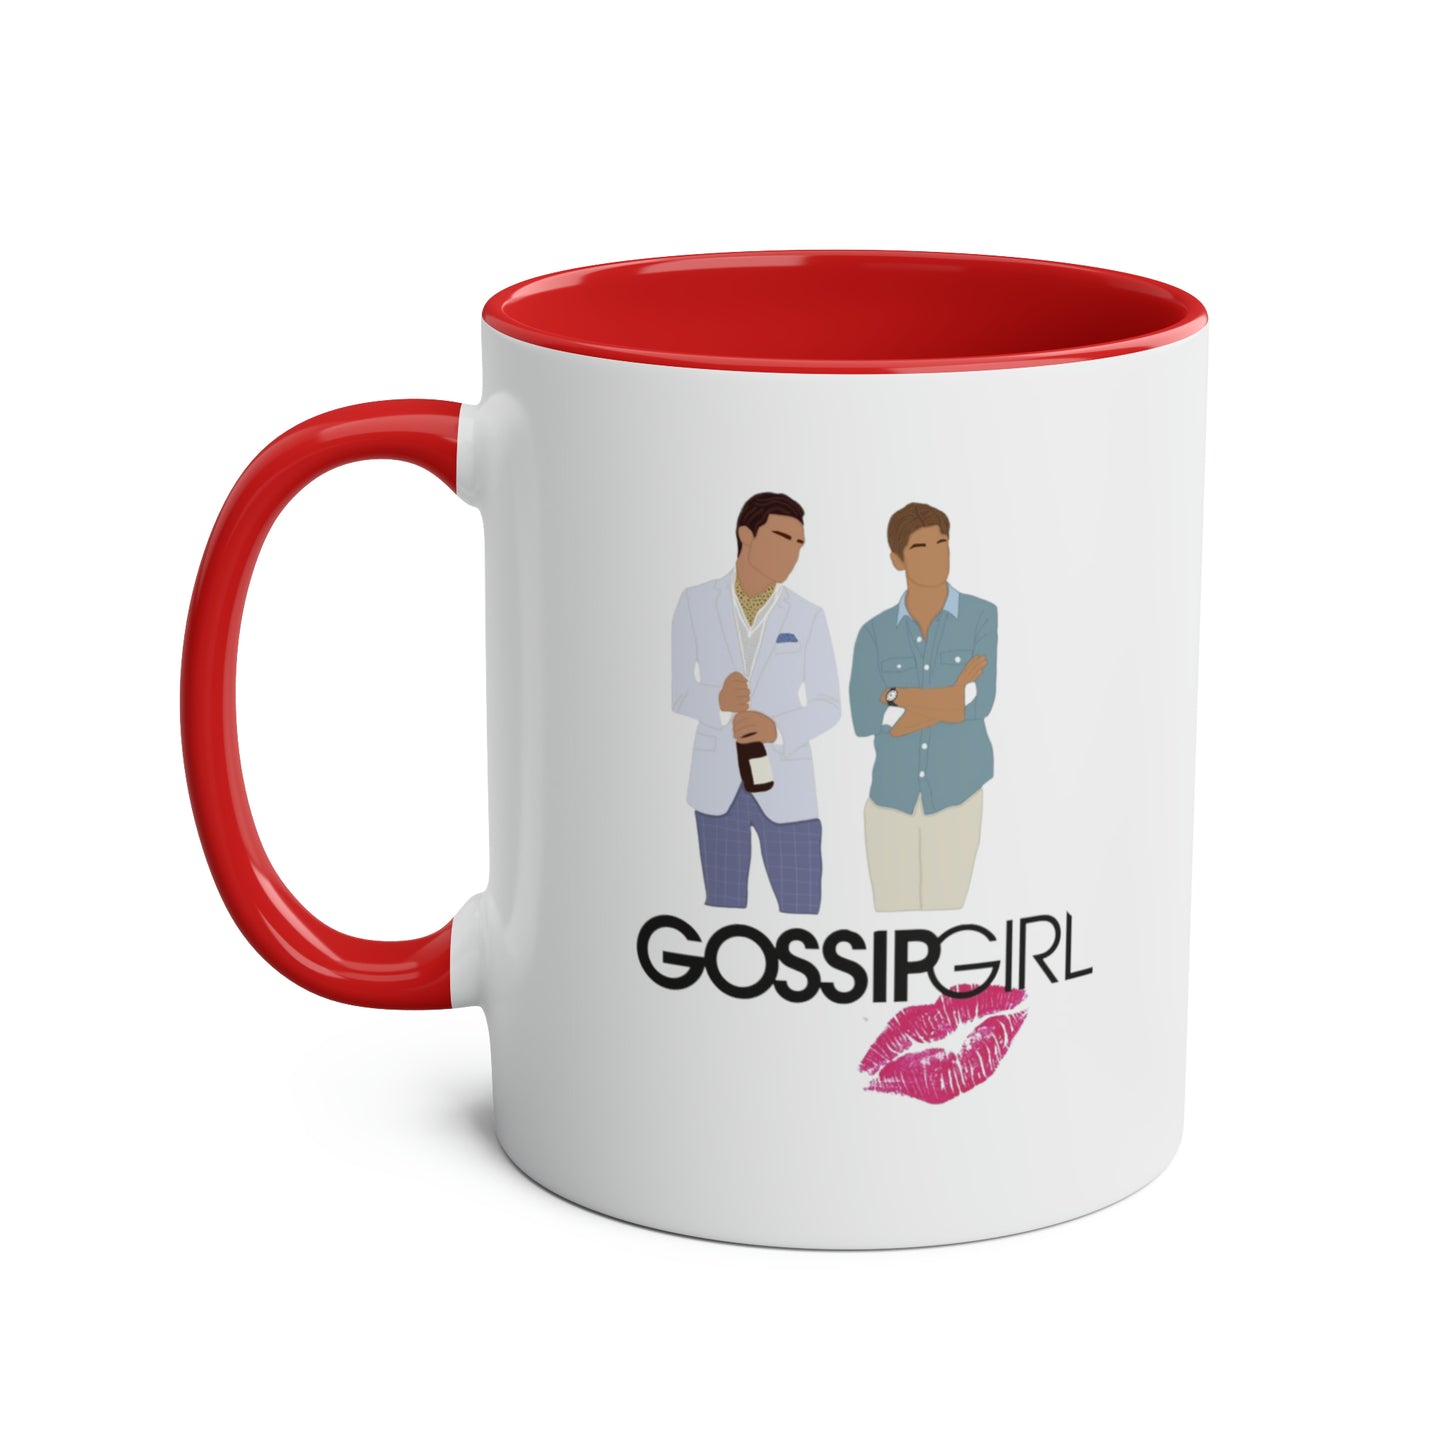 Chuck and Nate XOXO Gossip Girl / Gossip Girl Mug